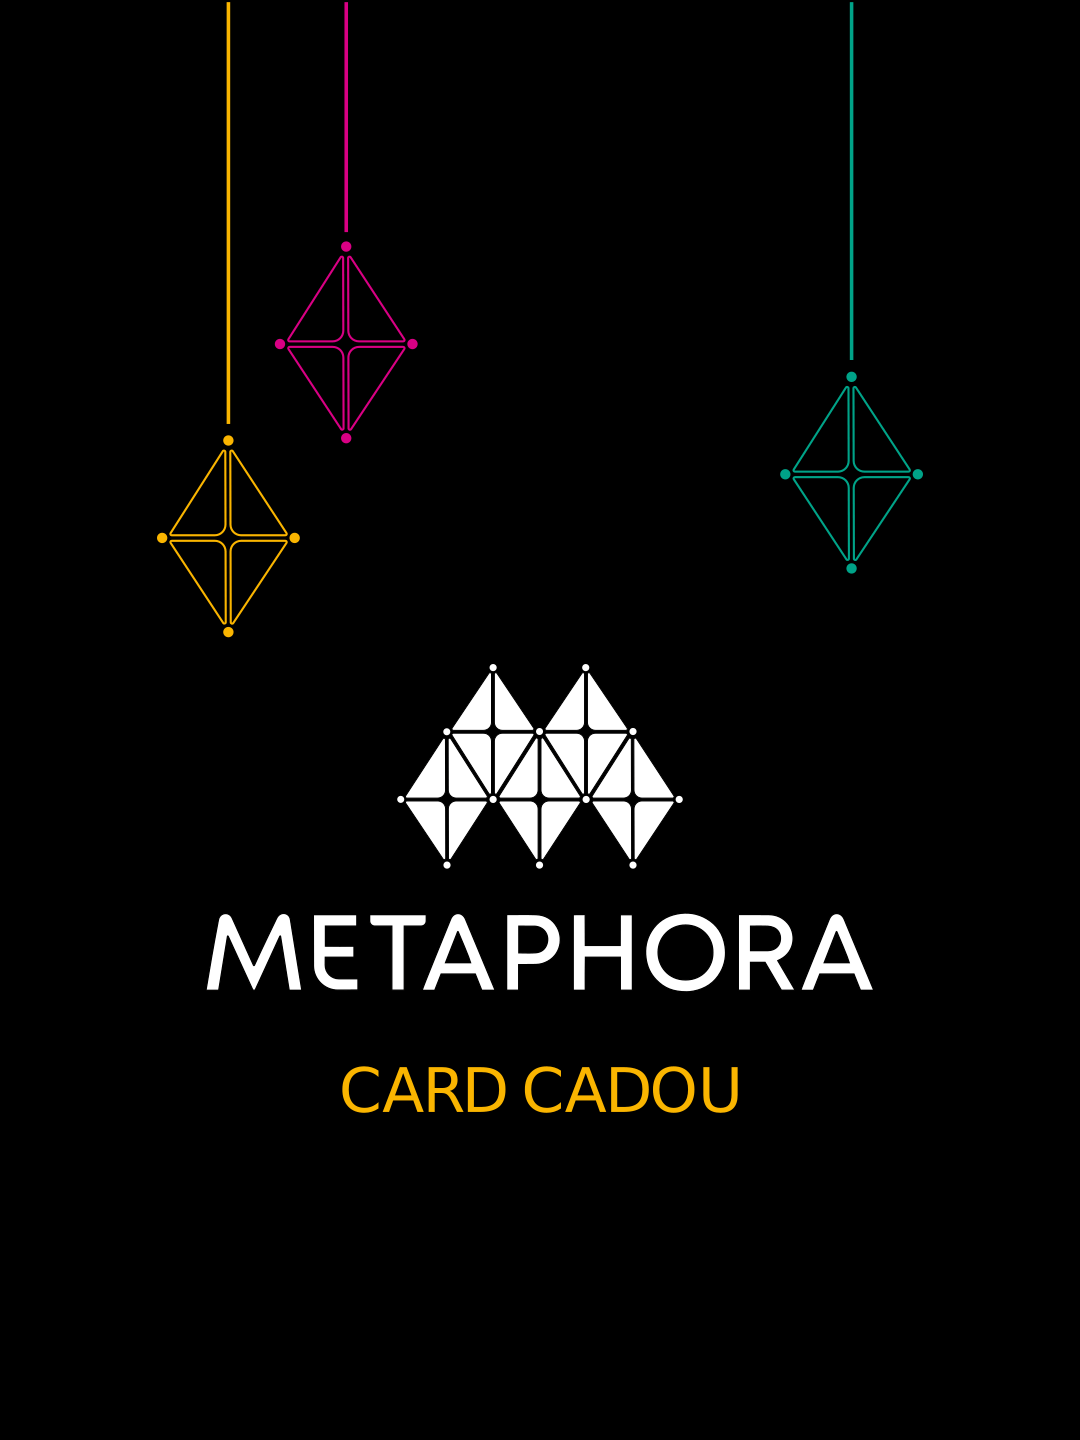 Card Cadou Metaphora